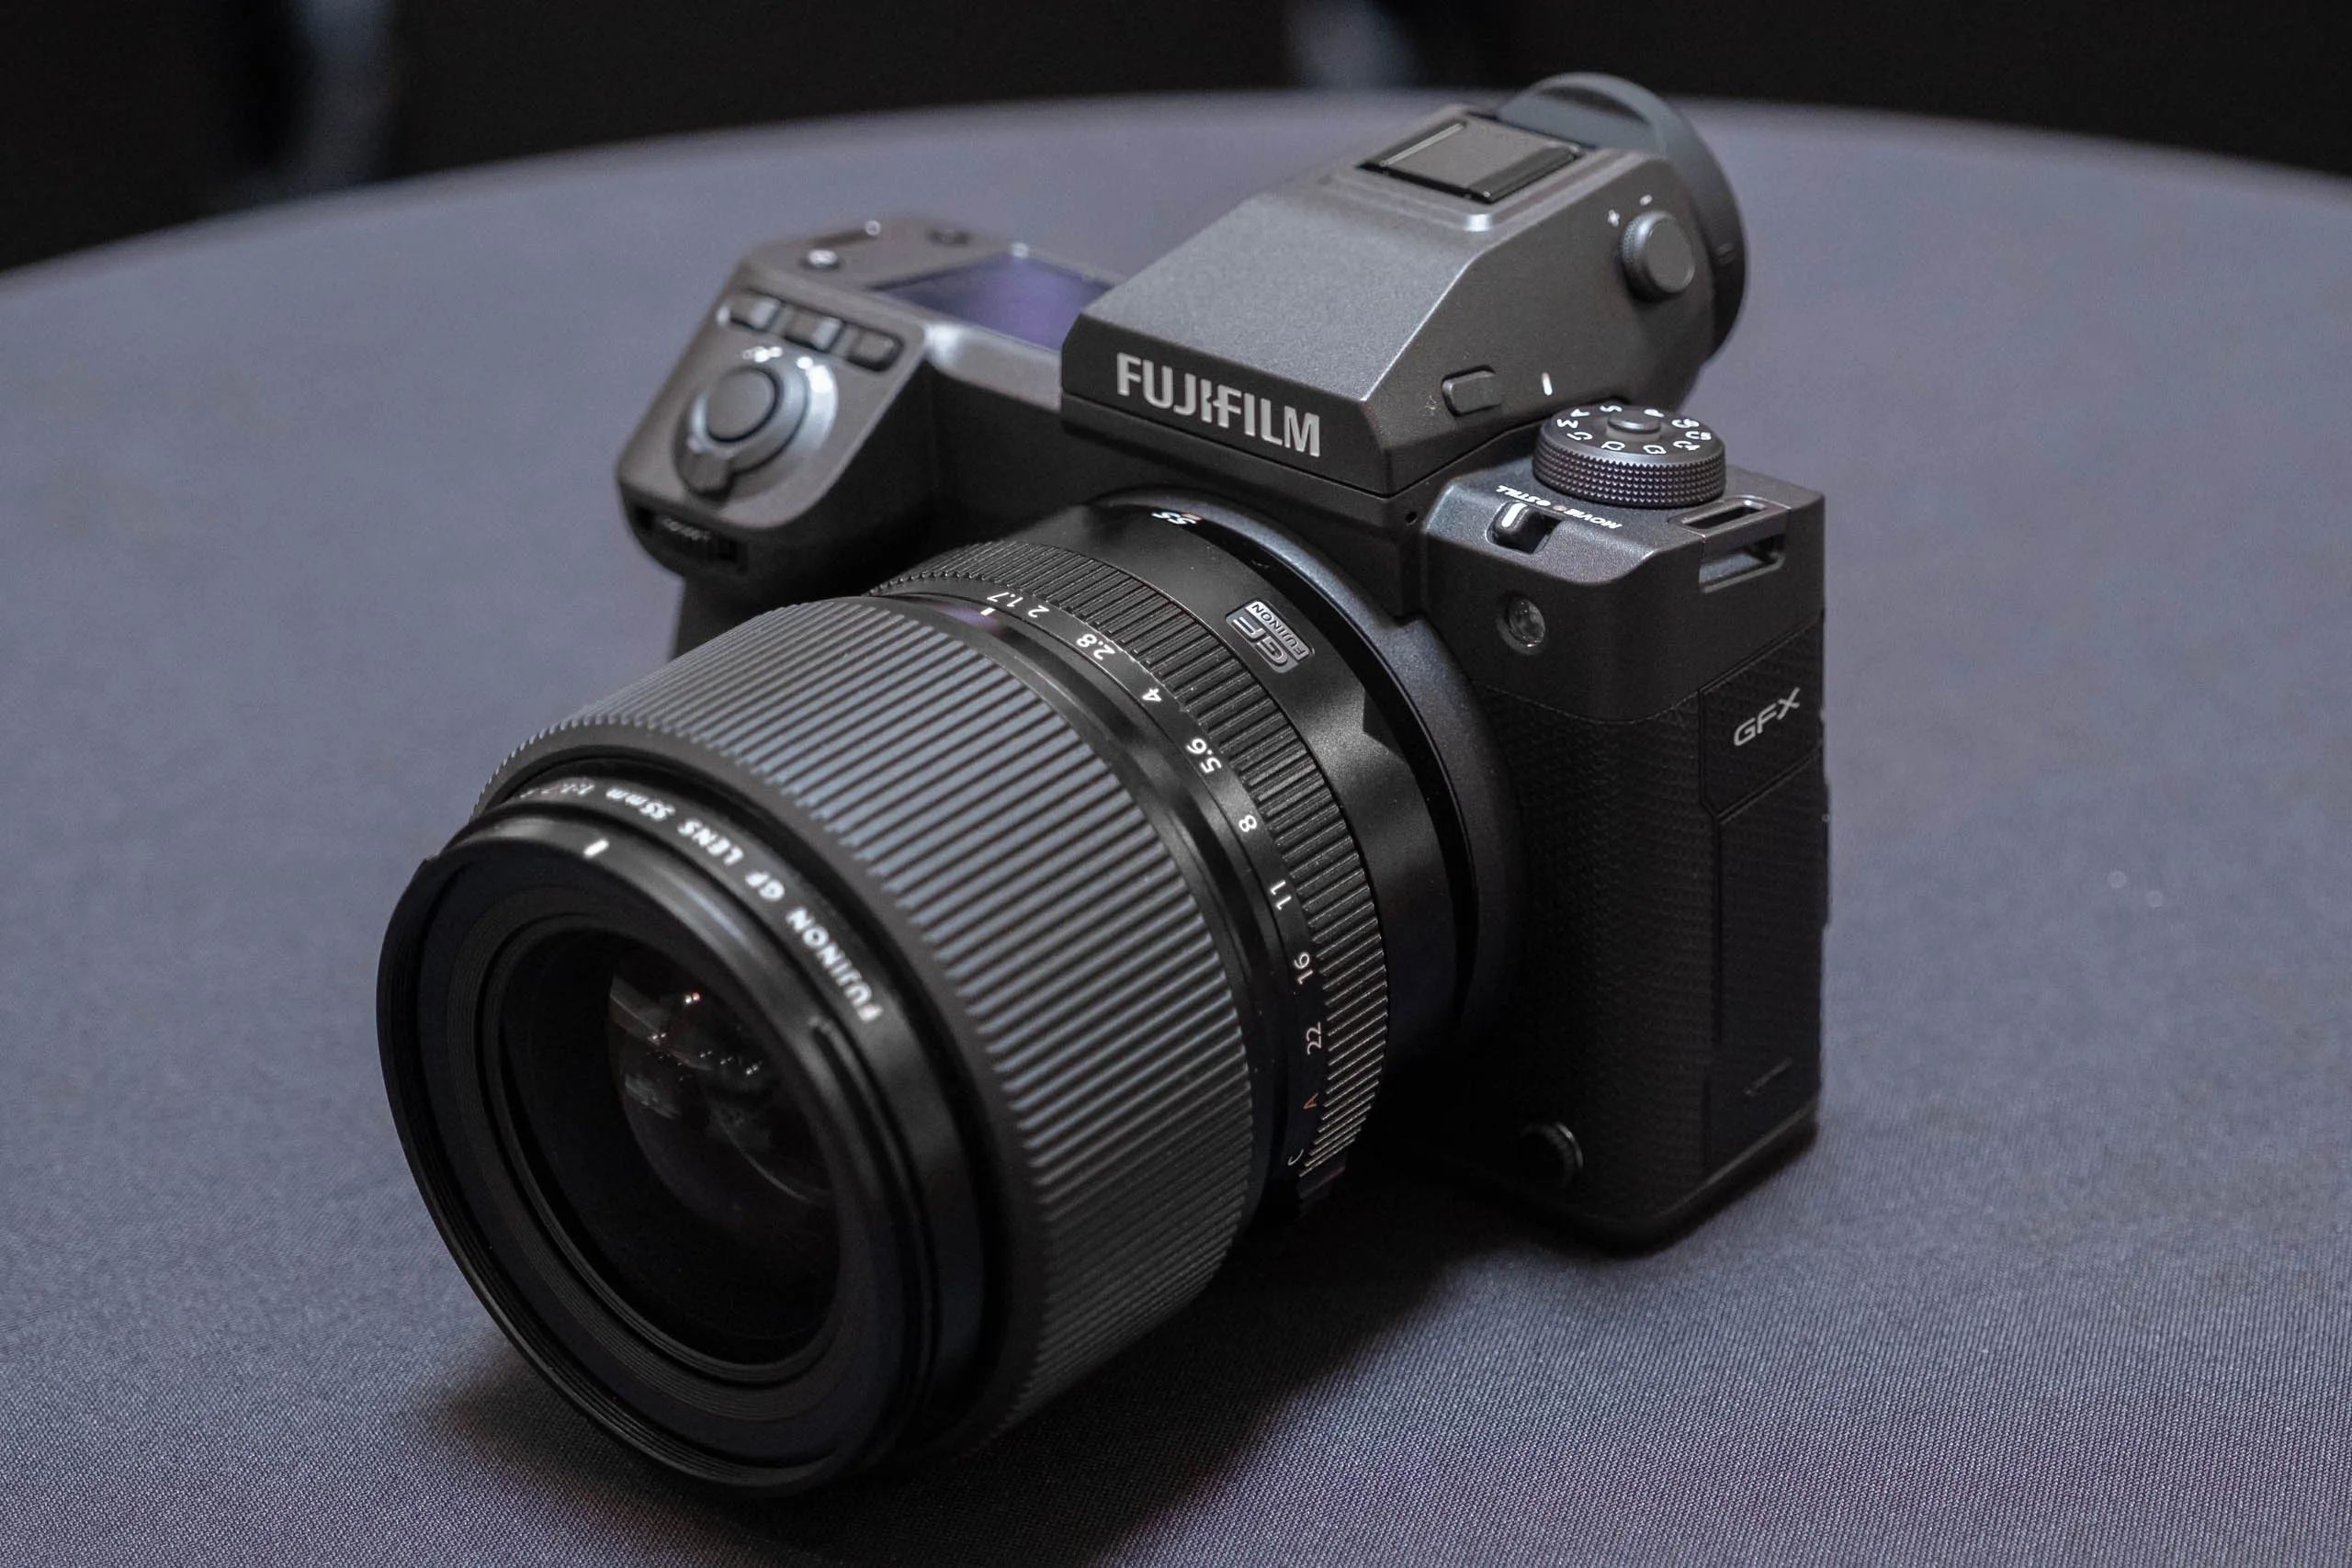 Máy ảnh Fujifilm GFX100 II chính thức ra mắt tại Việt Nam